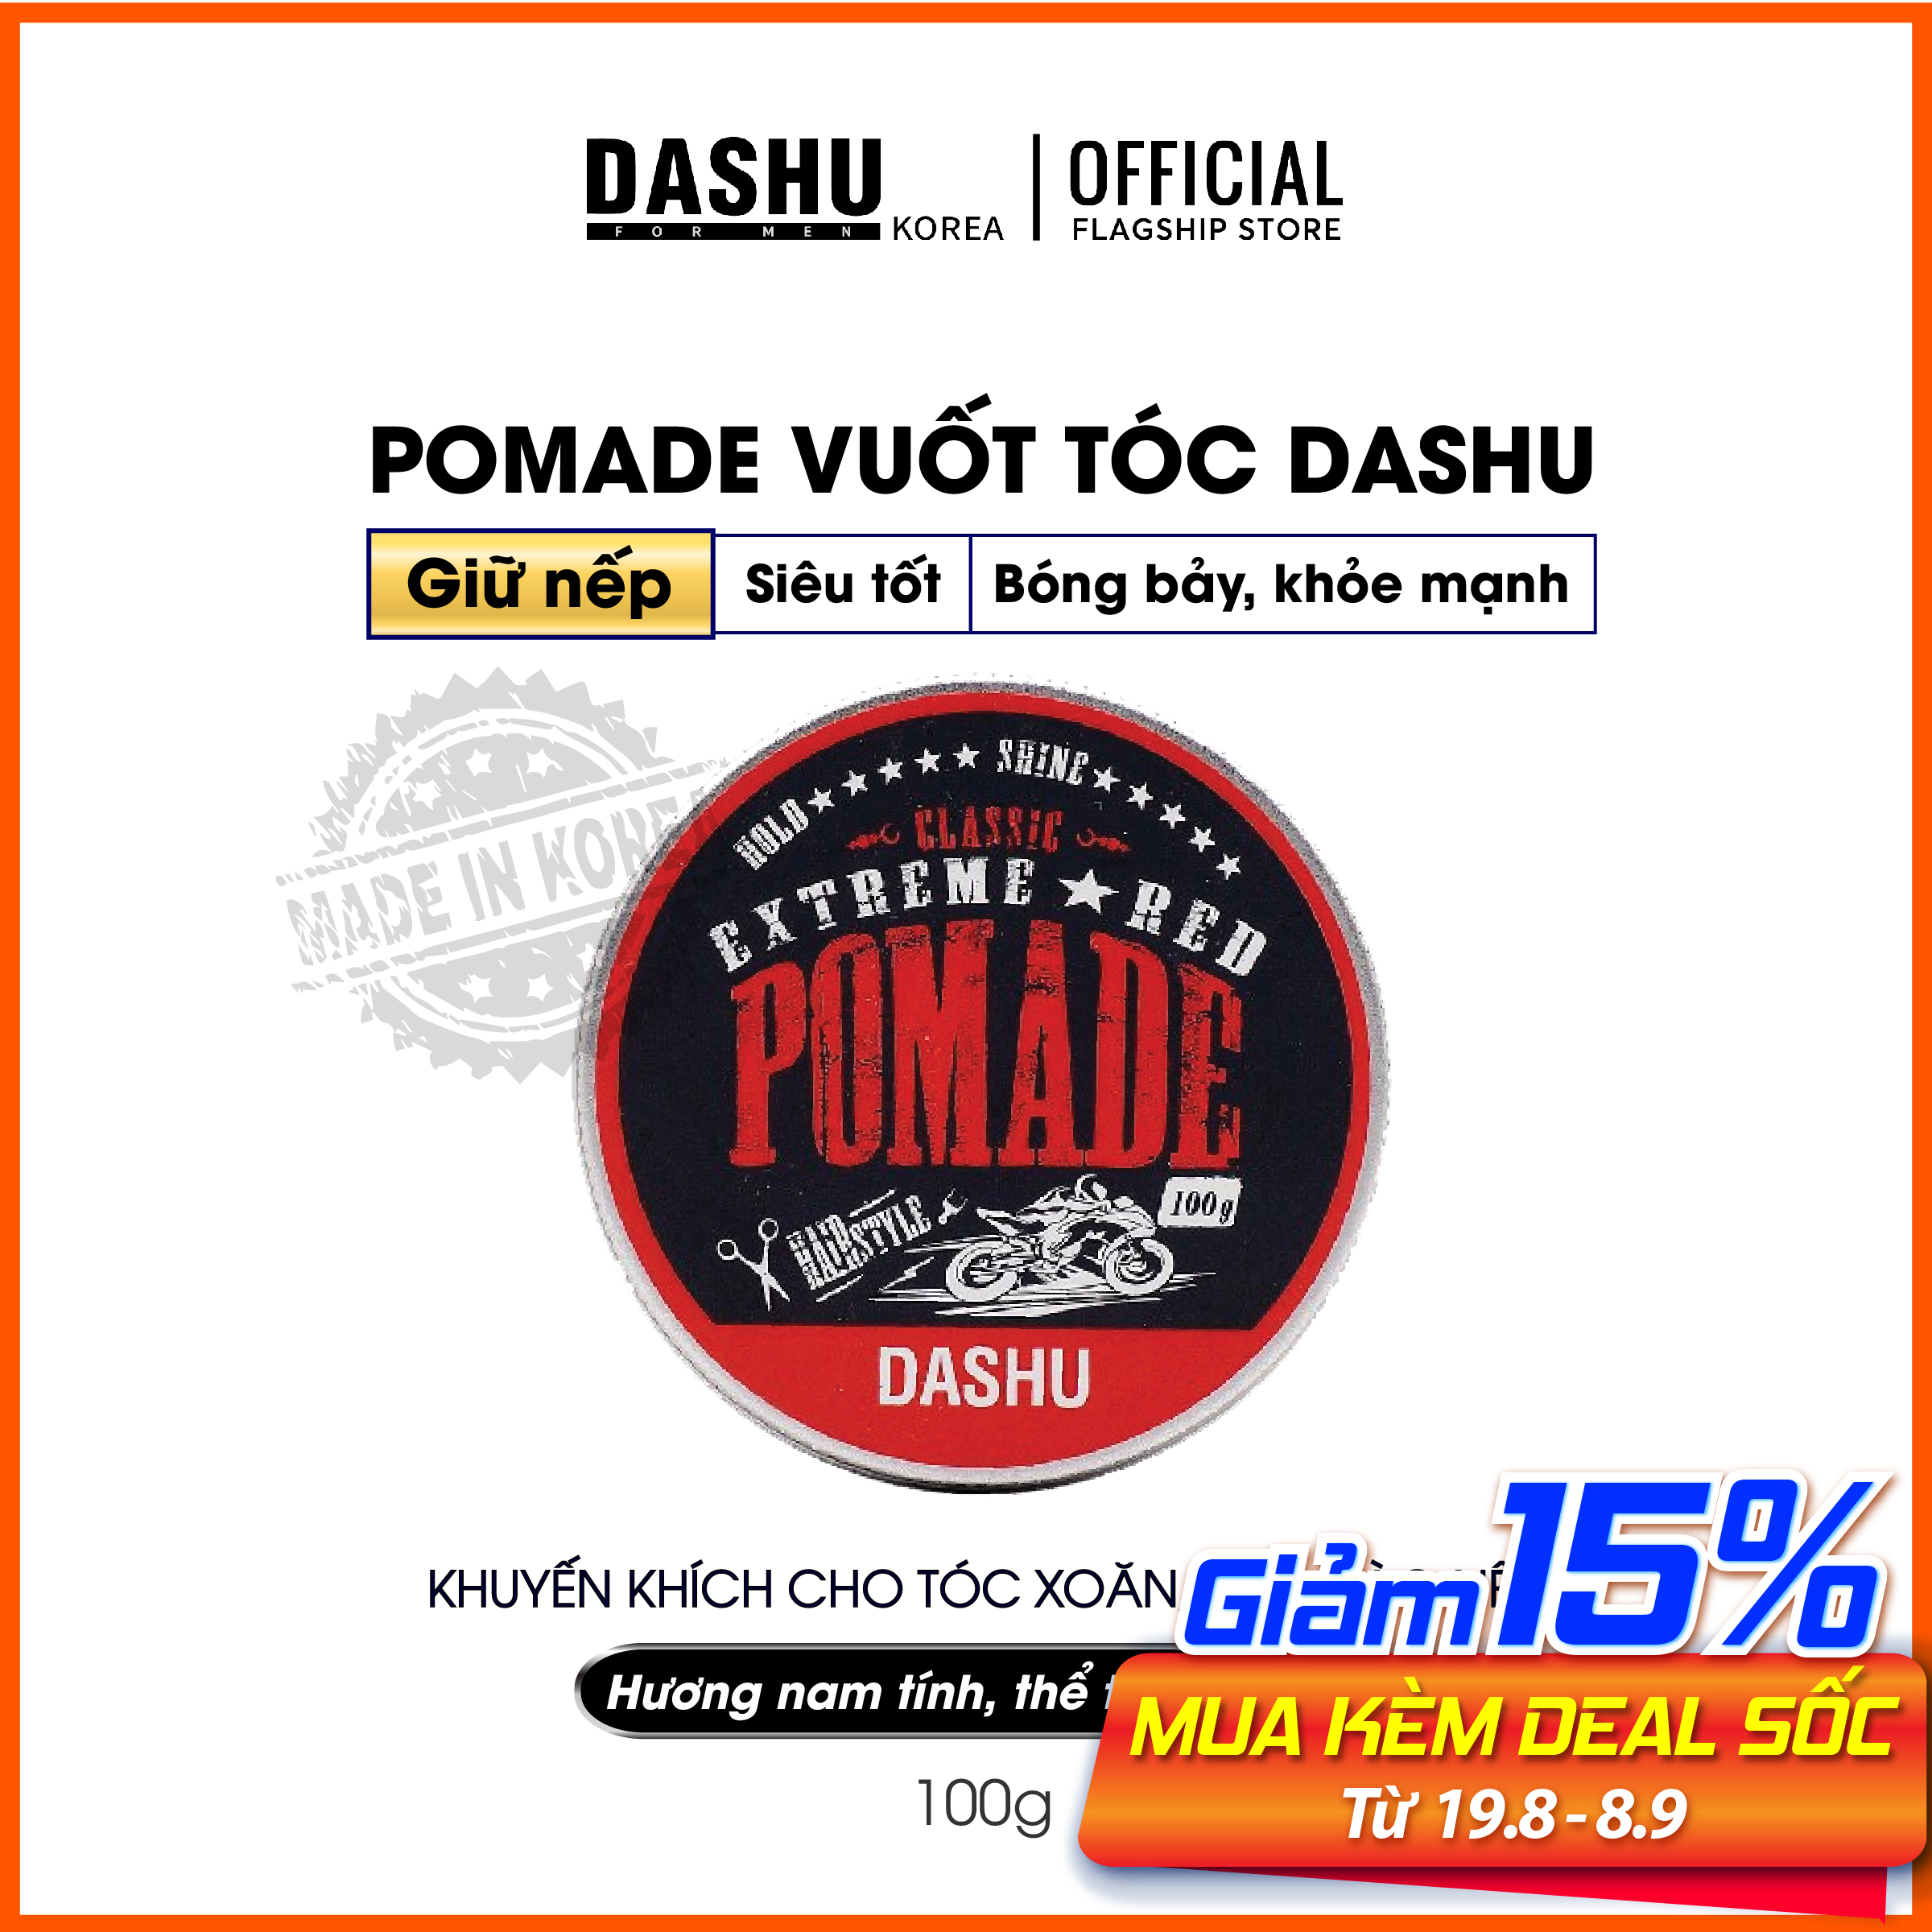 Pomade tạo kiểu tóc nam Hàn Quốc Dashu Dash Classic Renewal Extreme Red Pomade 100g, thành phần 90% thảo dược, thiết kế riêng cho người châu á, độ bóng 4, giữ nếp 10, hương nước hoa 3 tầng mùi cổ điển.